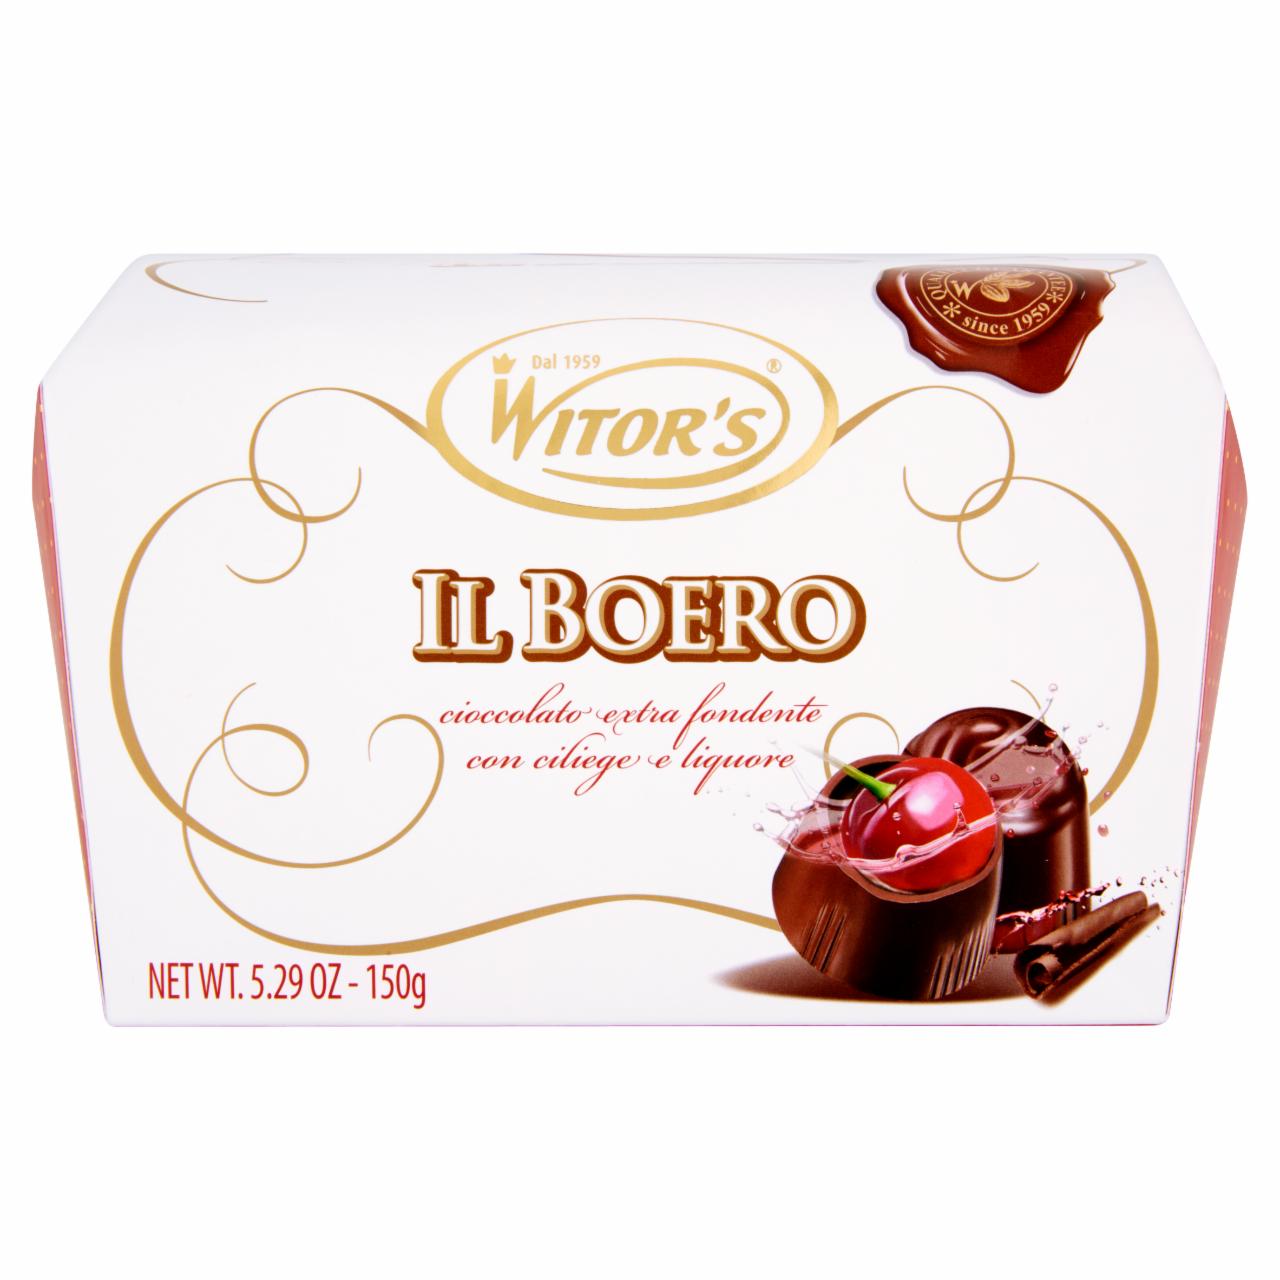 Képek - Witor's Il Boero étcsokoládé praliné meggyel és likőrrel töltve 150 g